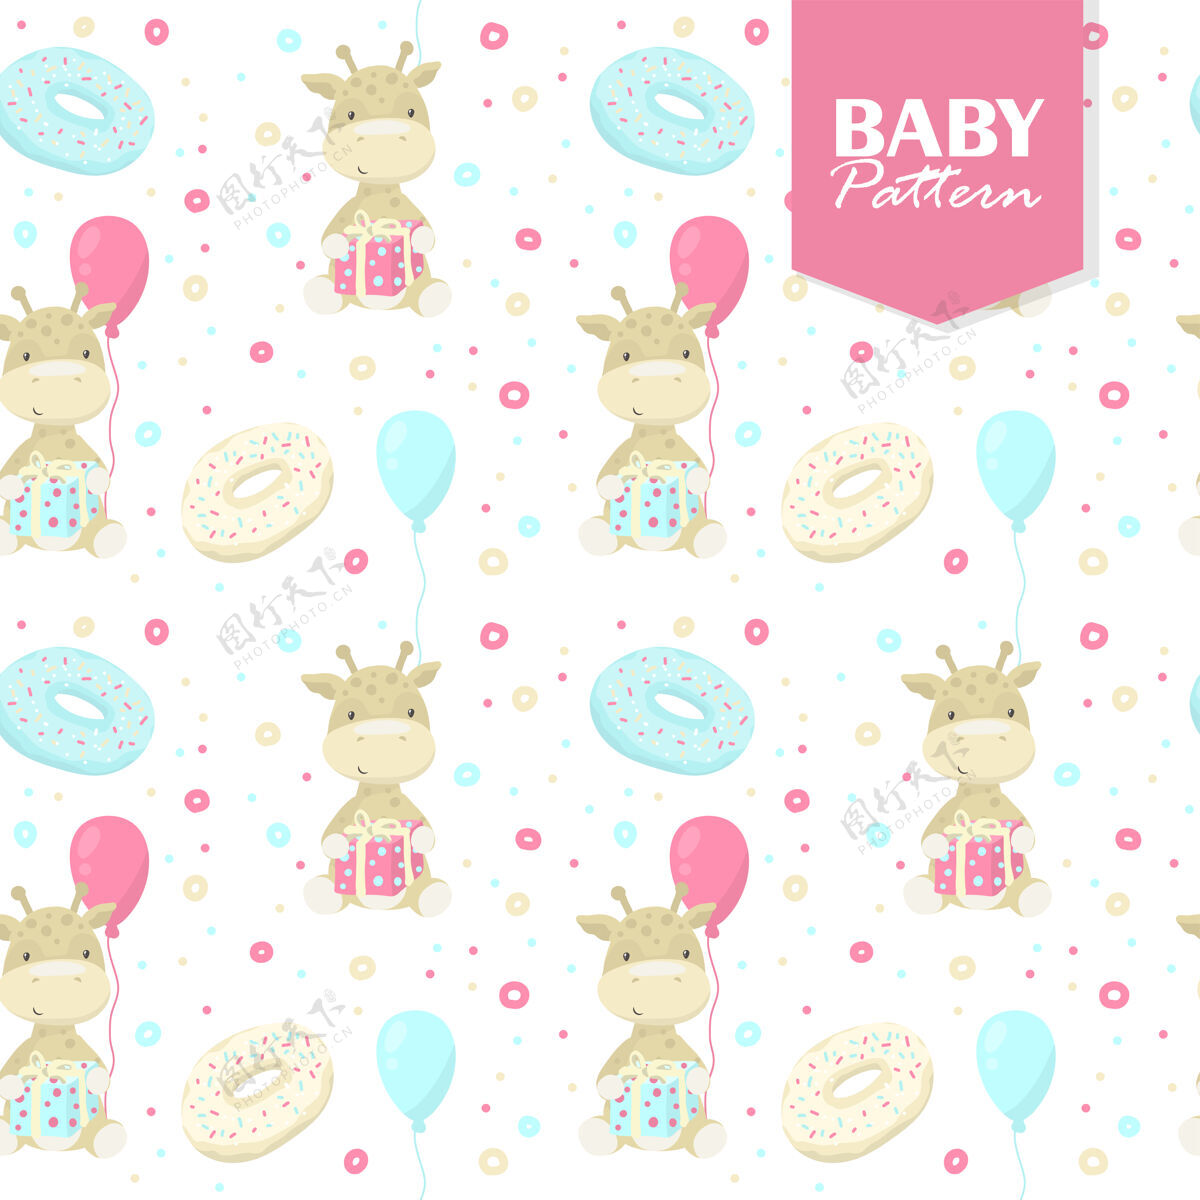 手绘彩色无缝模式与婴儿长颈鹿 礼物 甜甜圈 气球梦幻幼稚织物